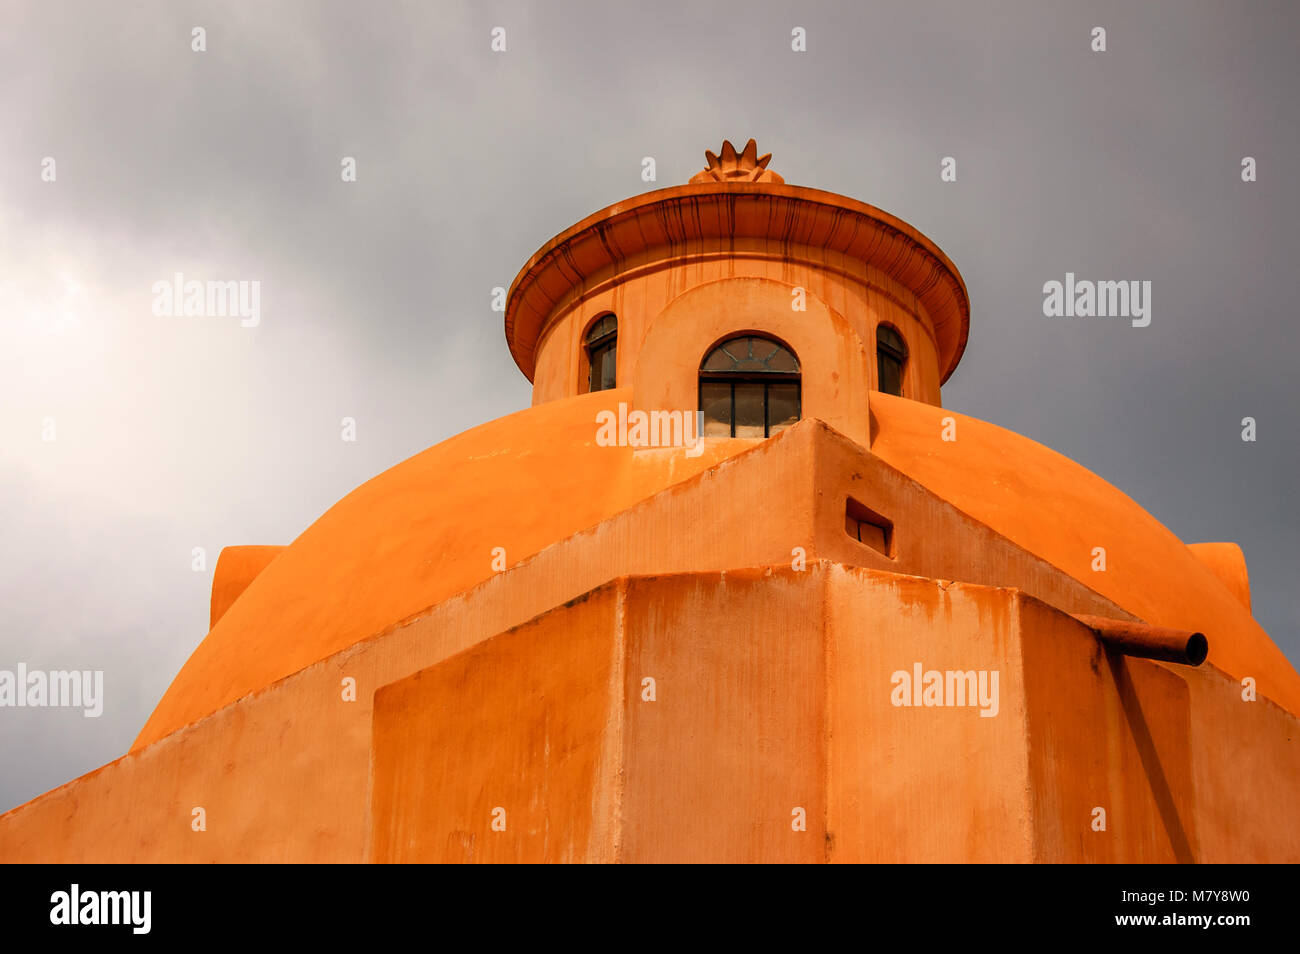 Die Außenseite des Ocker Kirche Dome in Mexiko gegen einen stürmischen Himmel Stockfoto